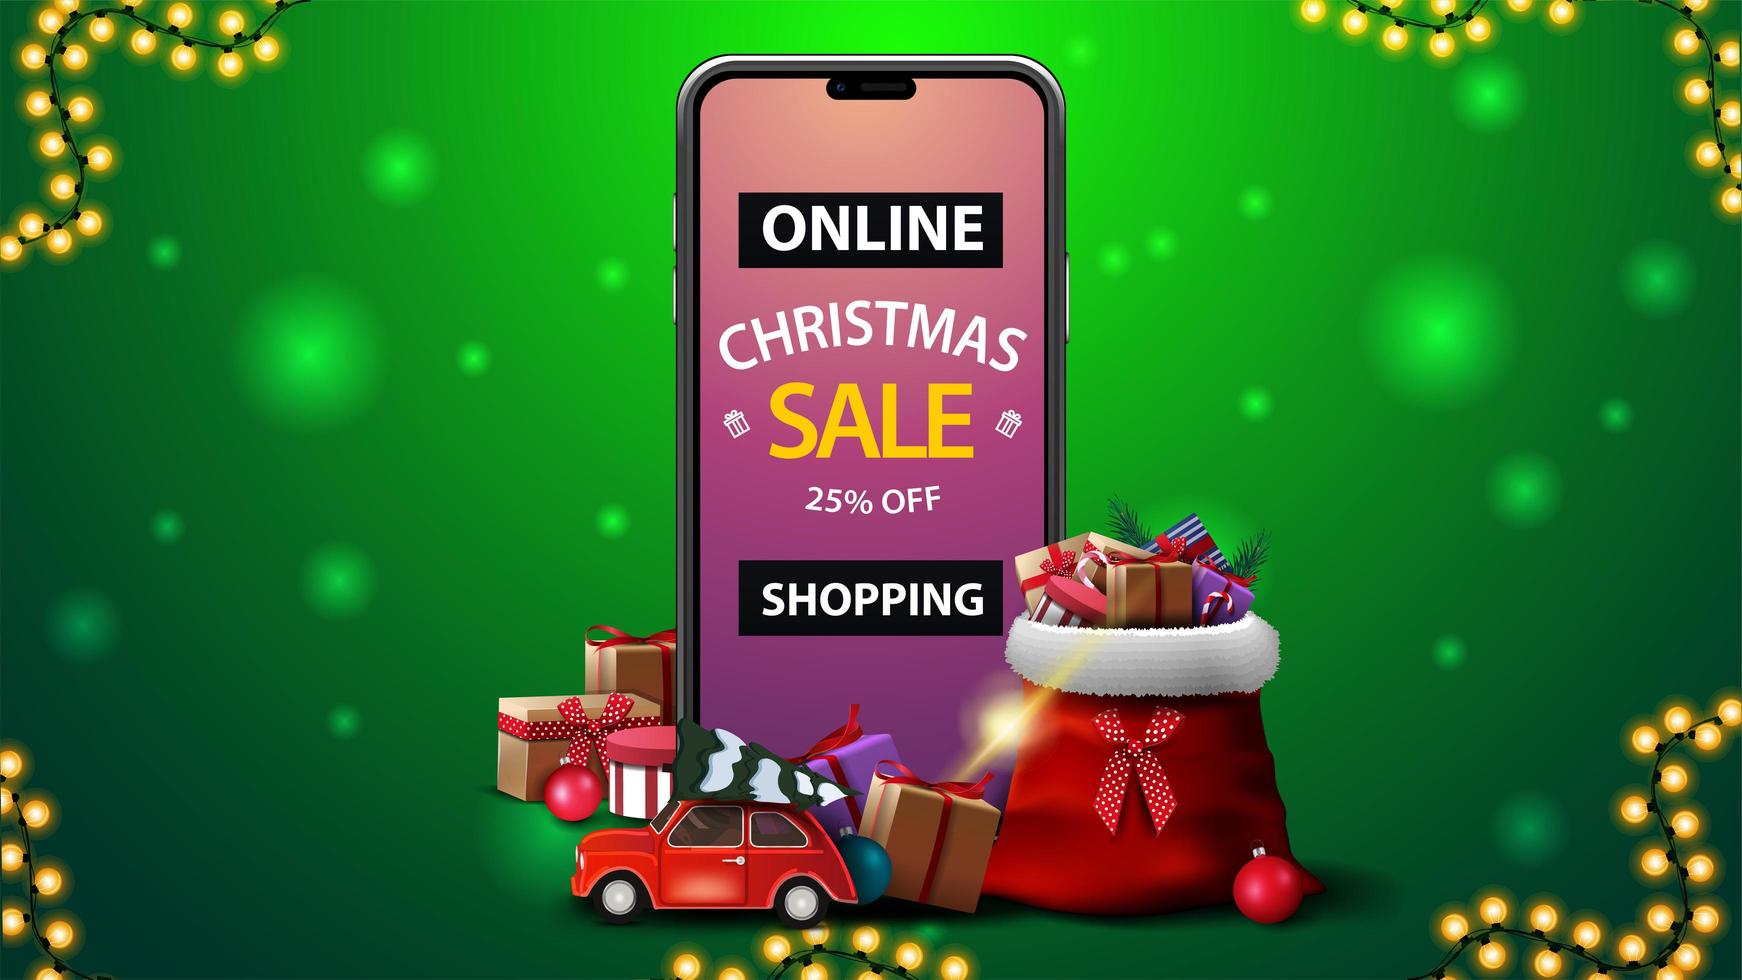 online winkelen, kerstuitverkoop, groene kortingsbanner met smartphone met aanbieding op het scherm, kerstmanzak met cadeautjes en rode vintage auto met kerstboom vector